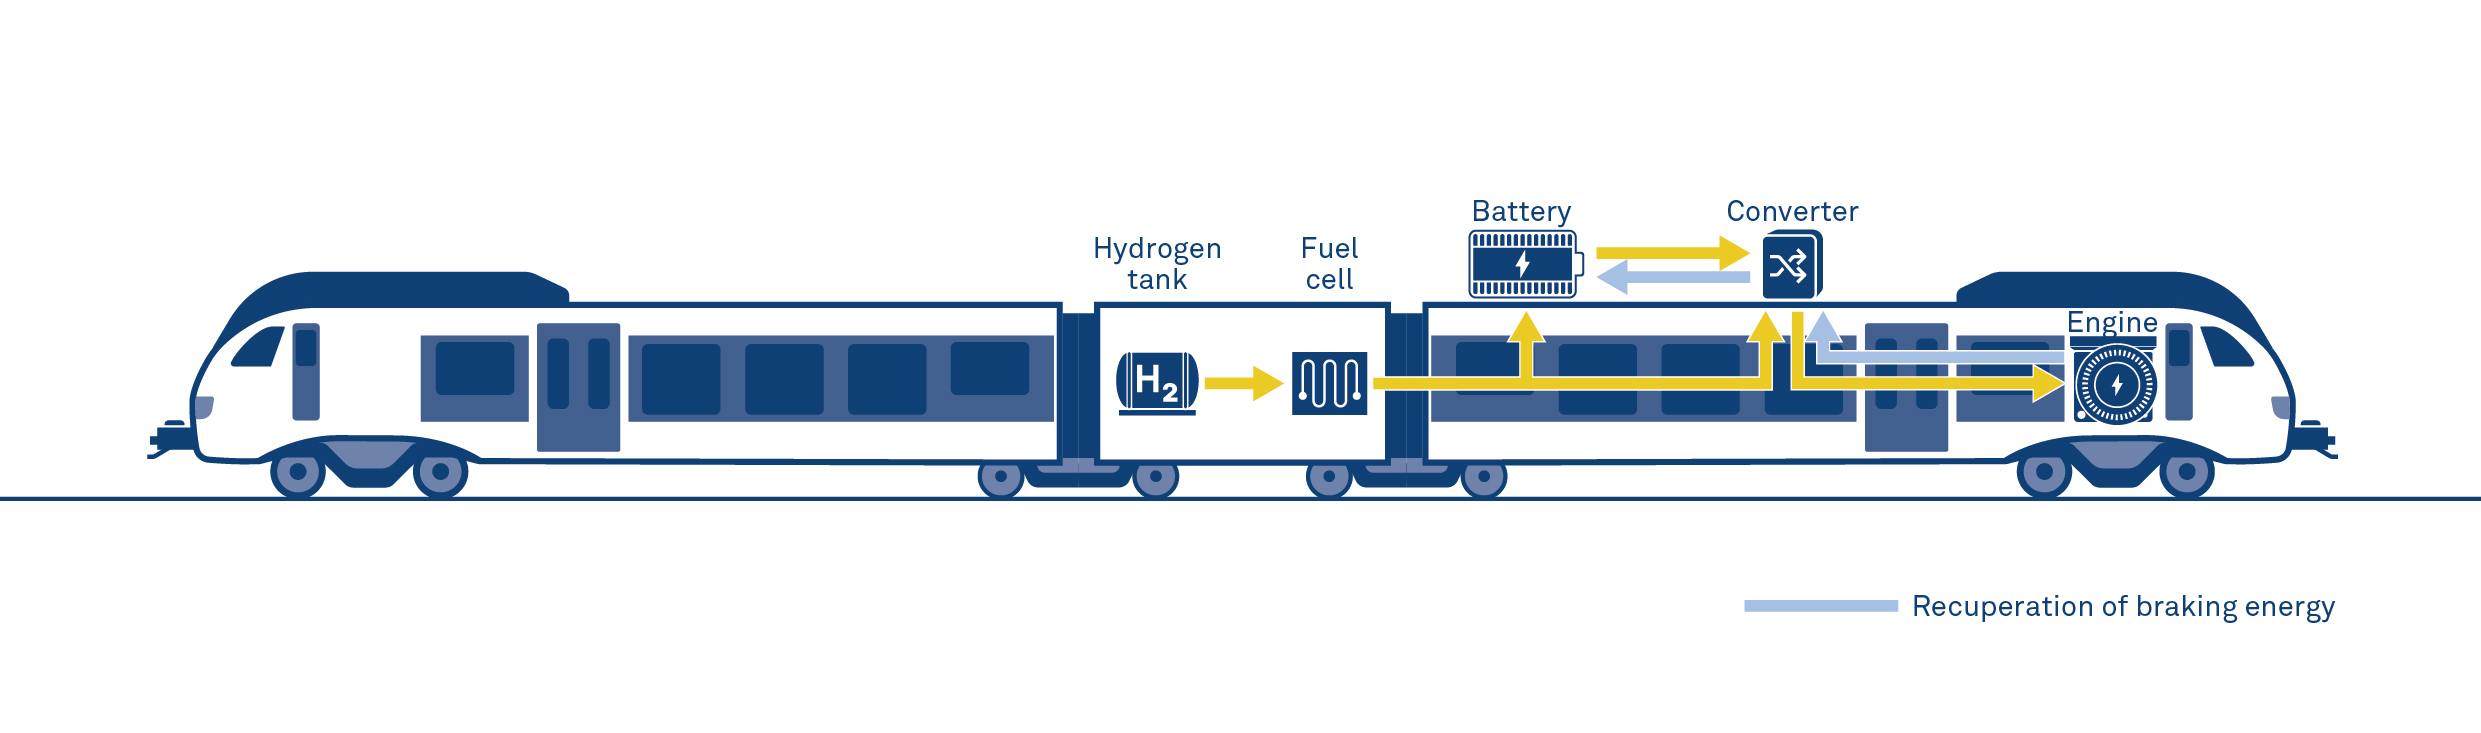 stadler flört h2 hidrojenle çalışan tren